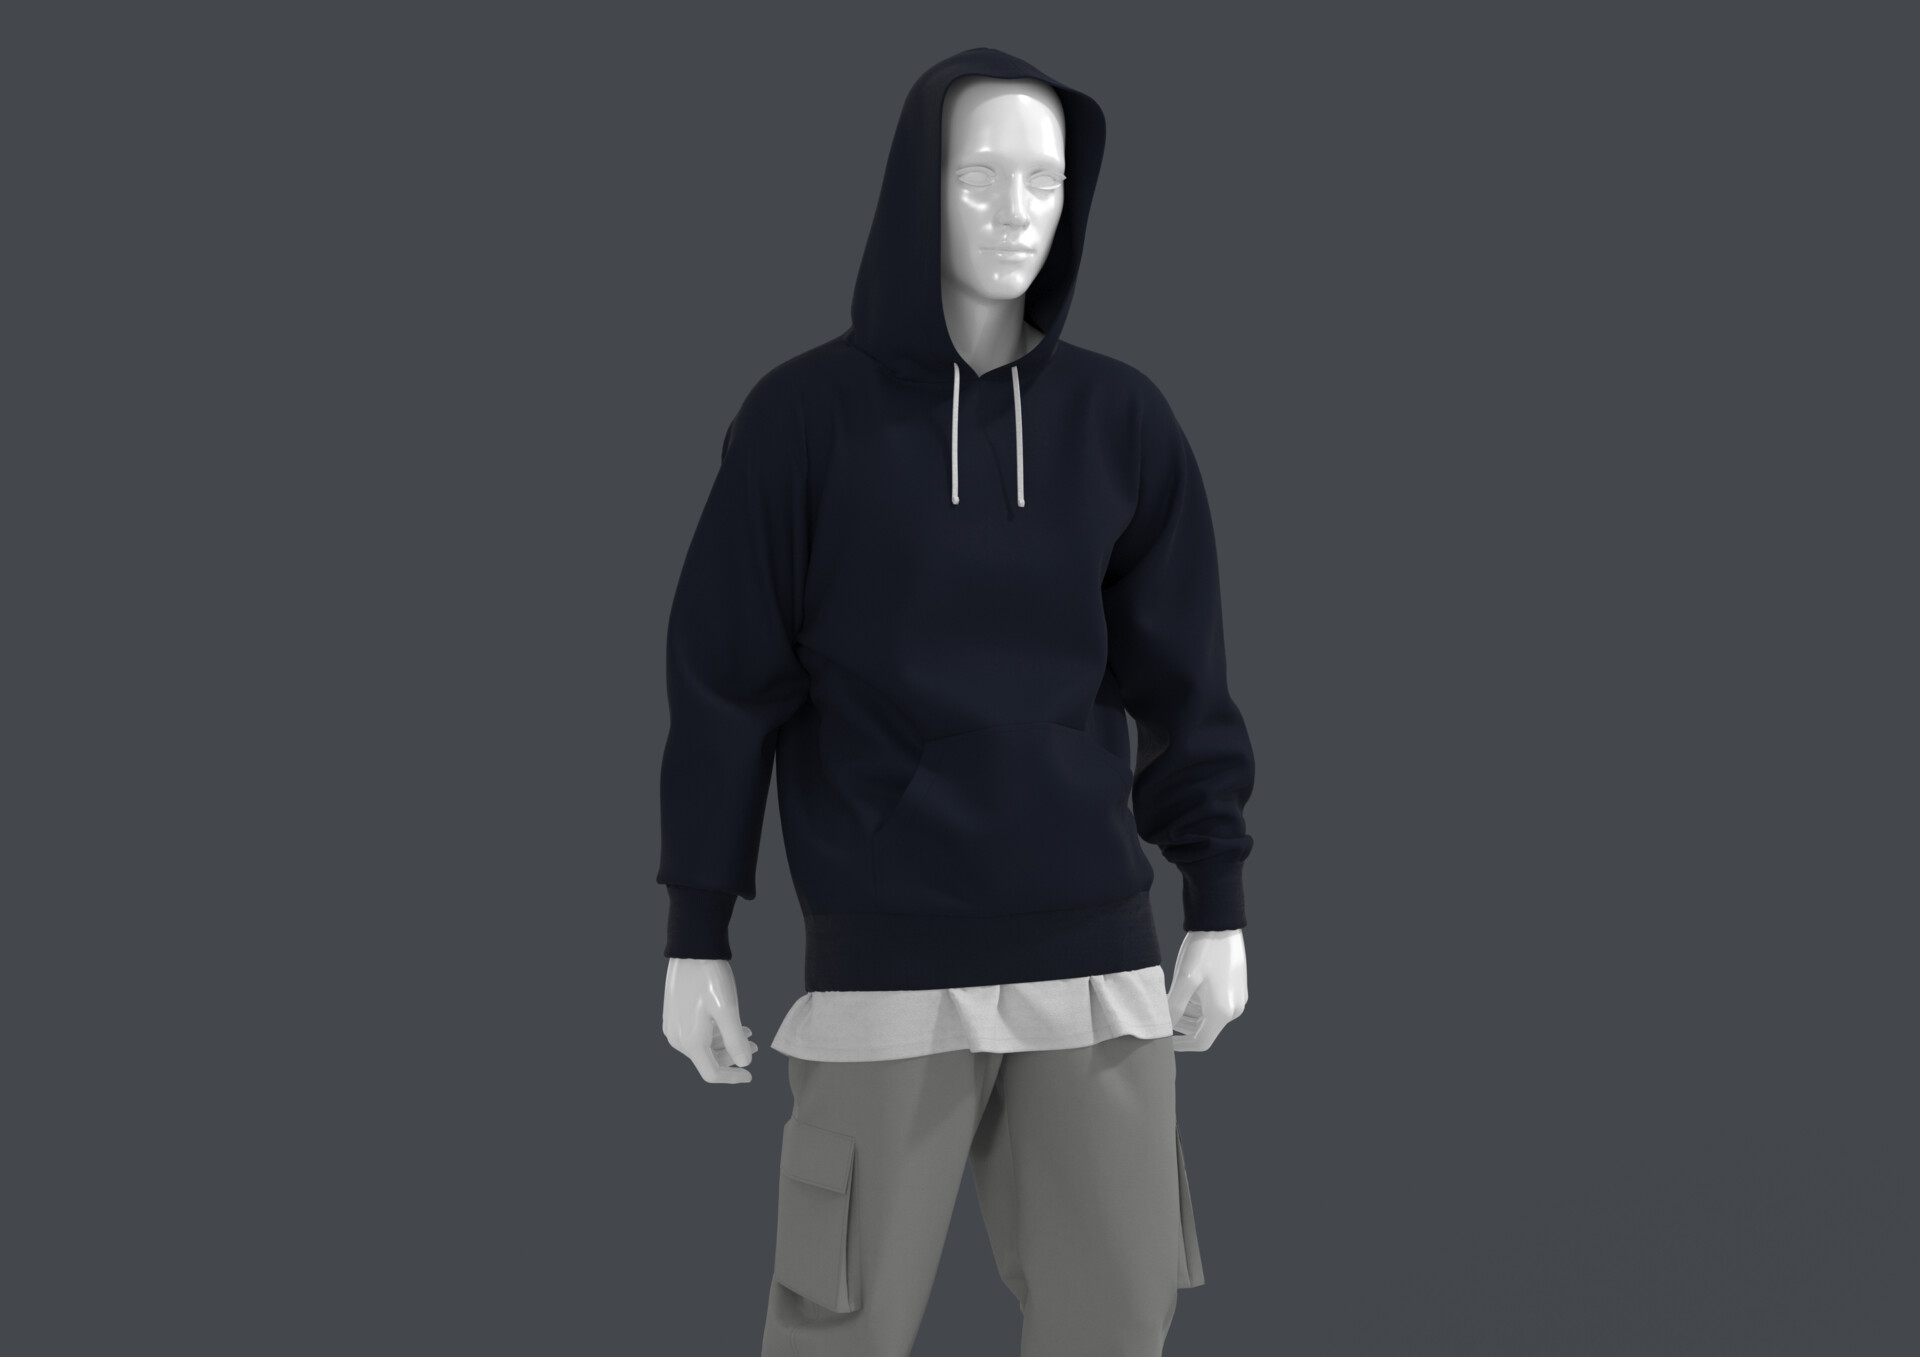 ArtStation - Men's Navy Hoodie Casual Outfit